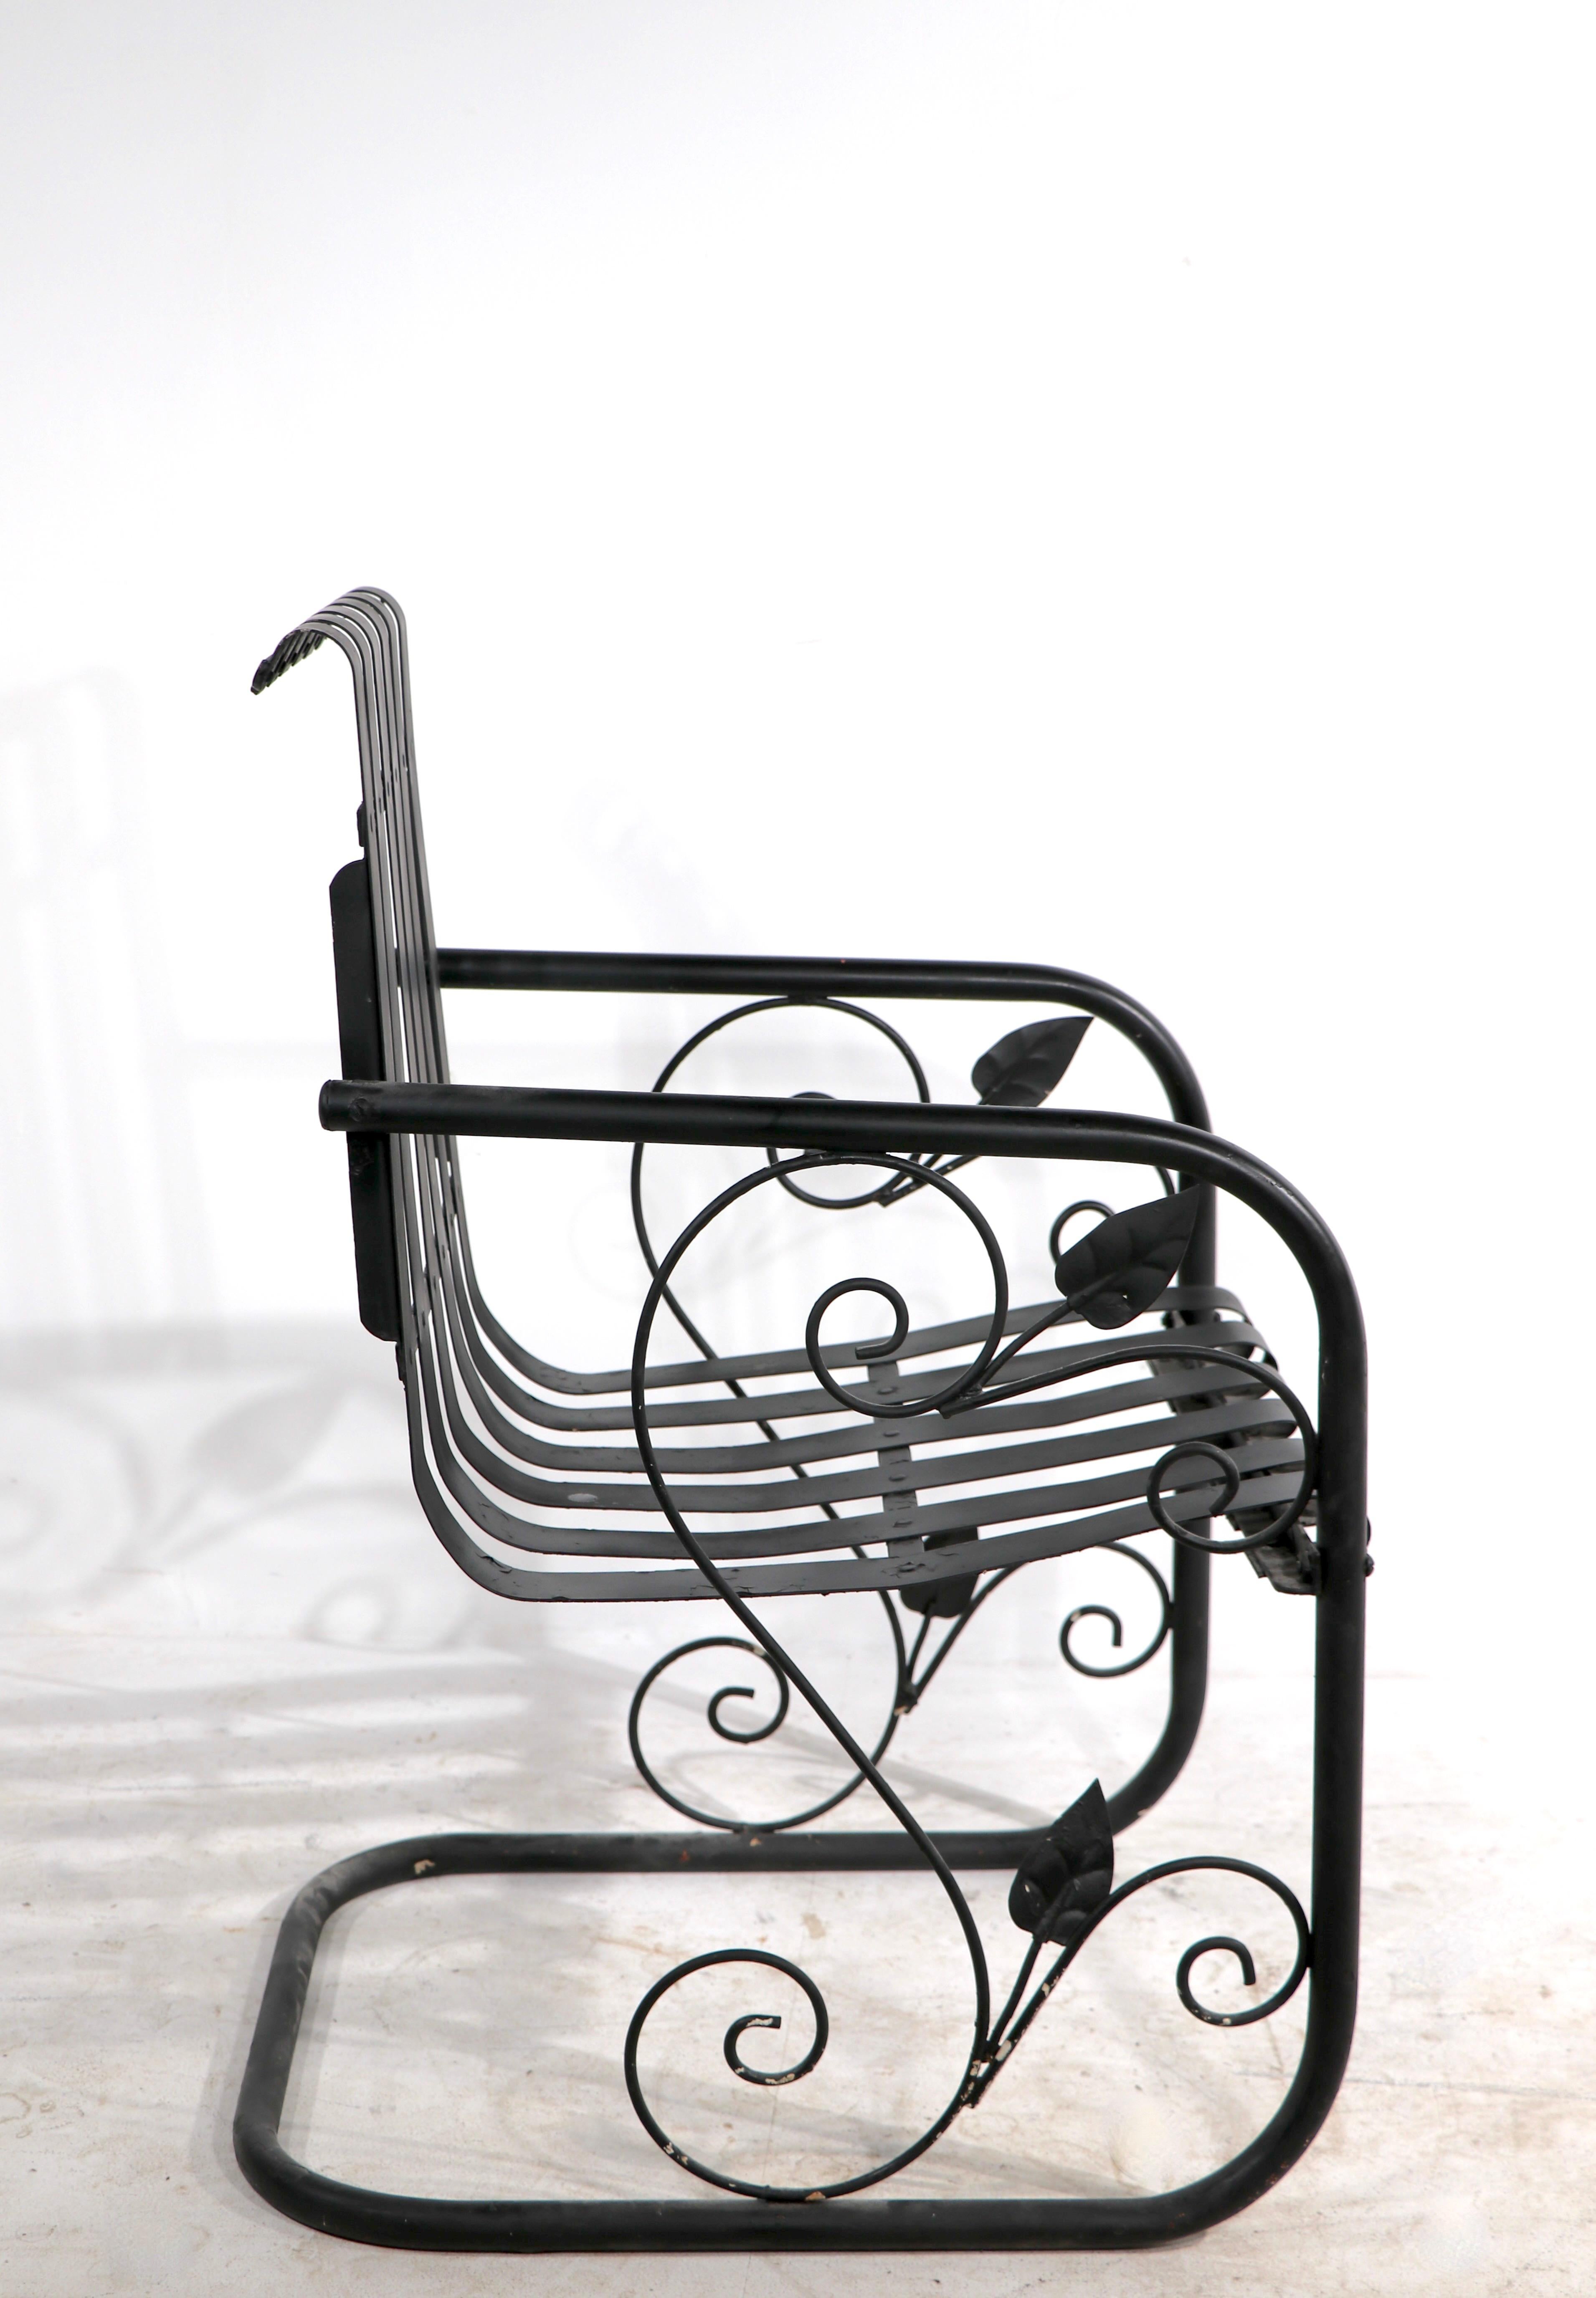 Paire de chaises longues Art Déco en métal, convenant pour le jardin, le patio, la piscine ou le solarium. Ces chaises inhabituelles sont dotées d'un cadre métallique tubulaire avec des décorations de feuillage en fer forgé, et d'une assise et d'un